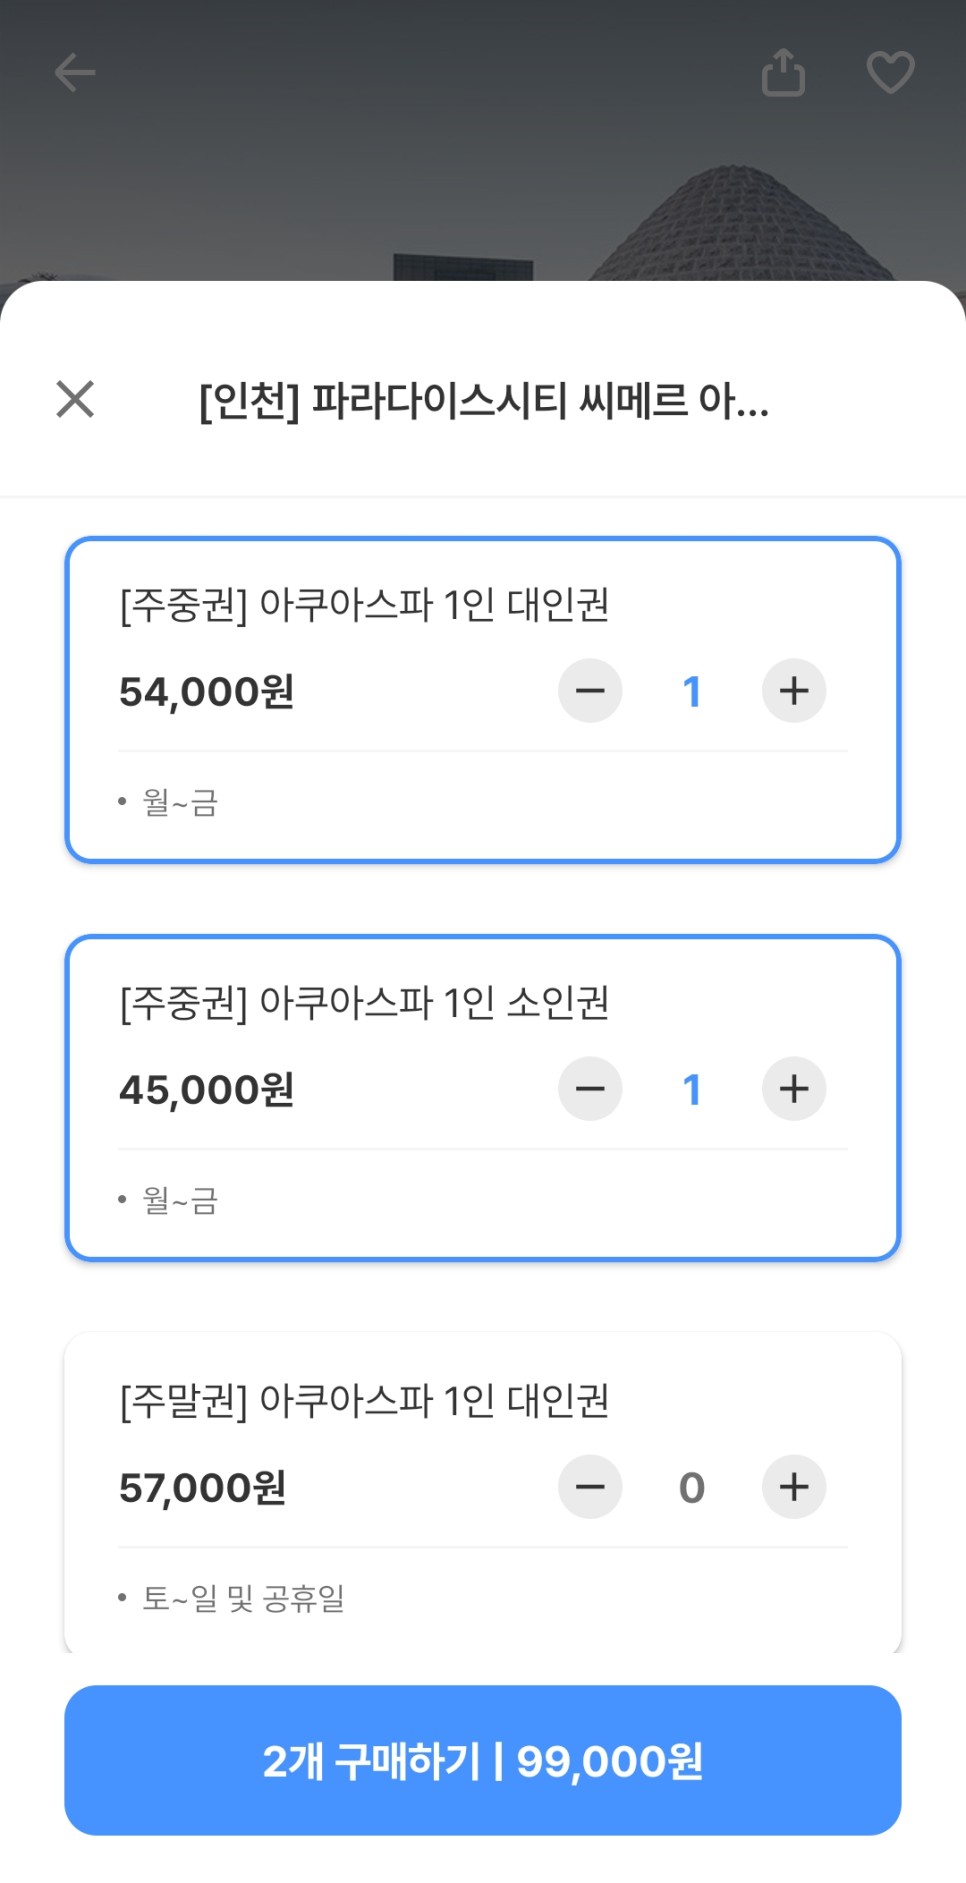 인천 파라다이스 씨메르 온천 수영장과 찜질방 할인 정보 후기